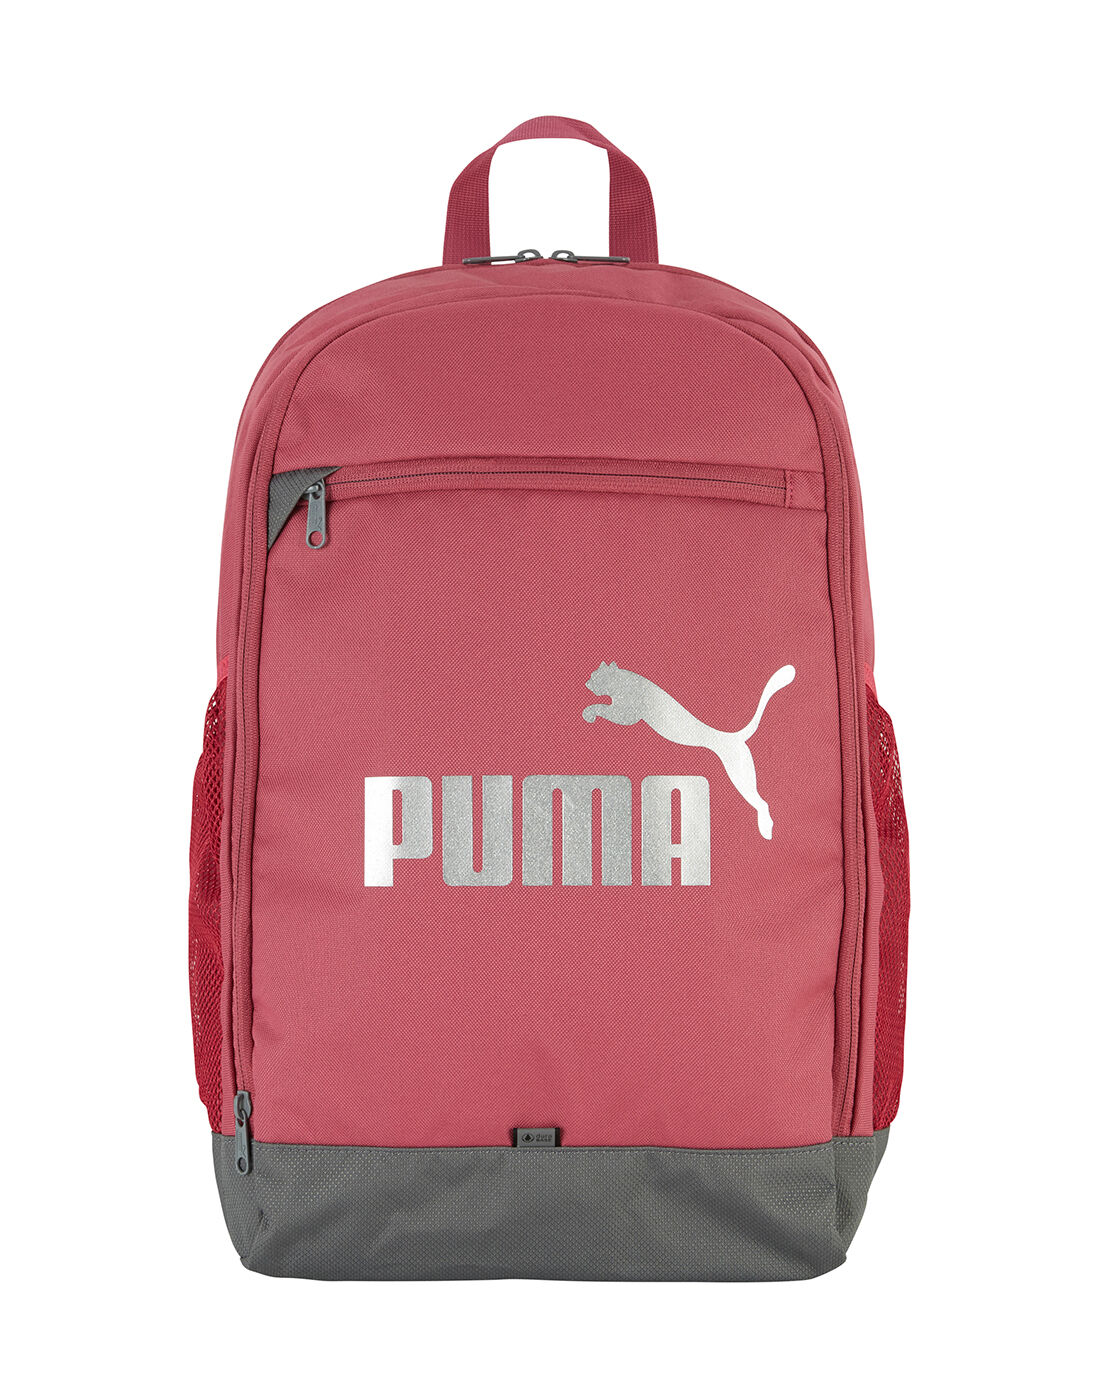 puma back bags